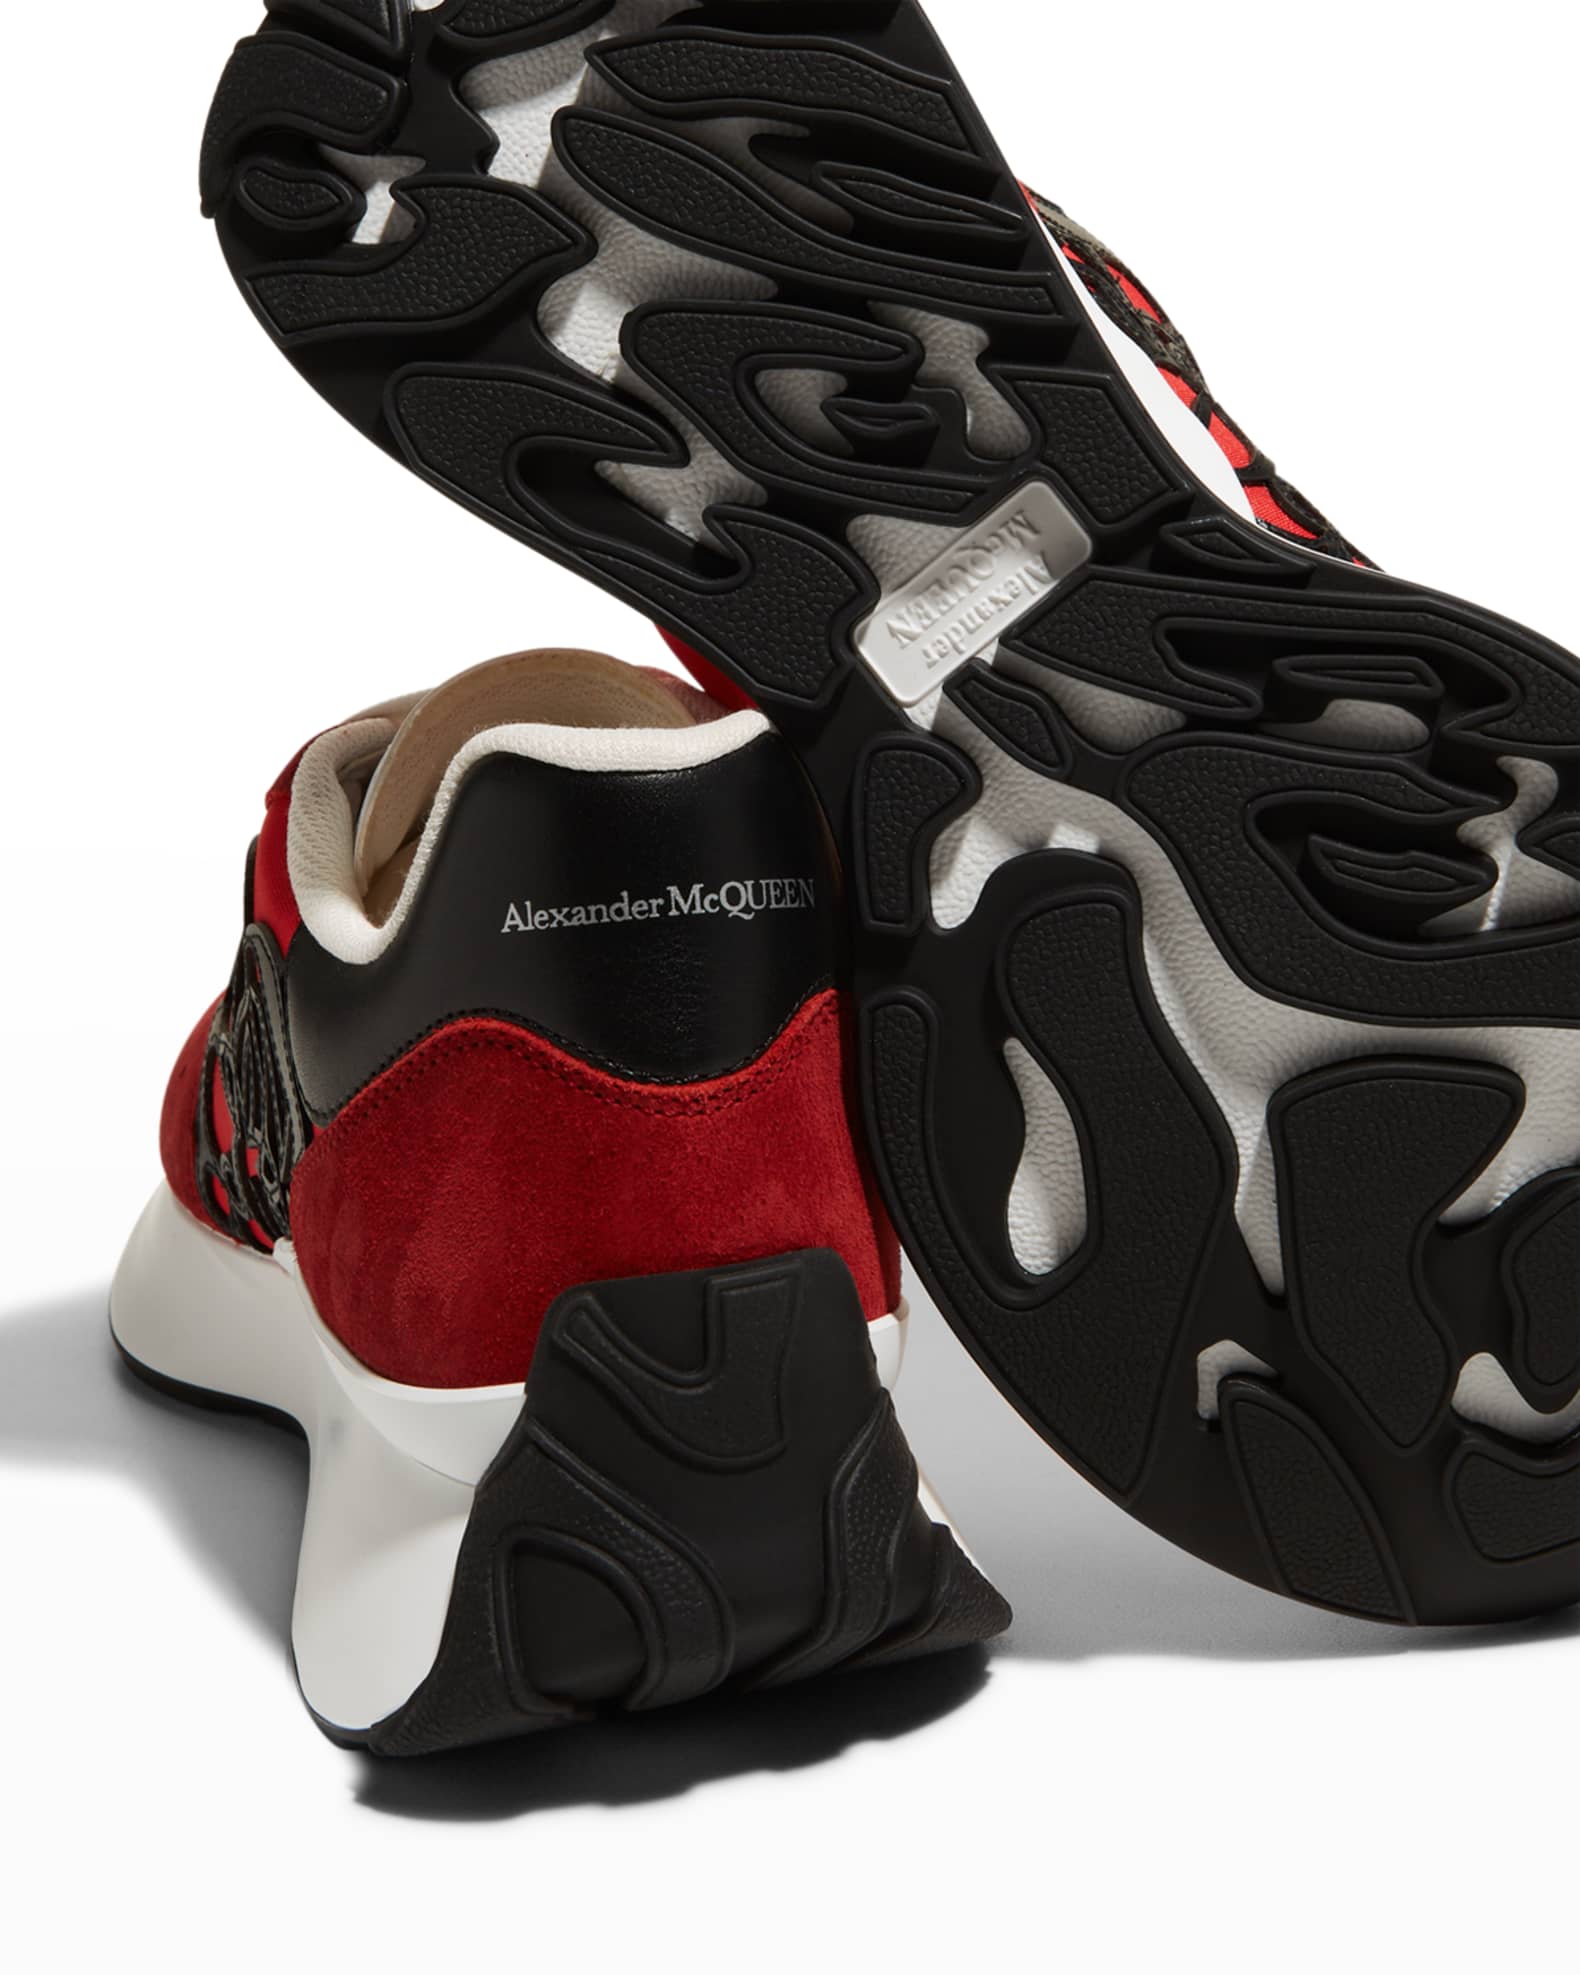 Alexander McQueen Sprint Colorblock Retro Runner Sneakers